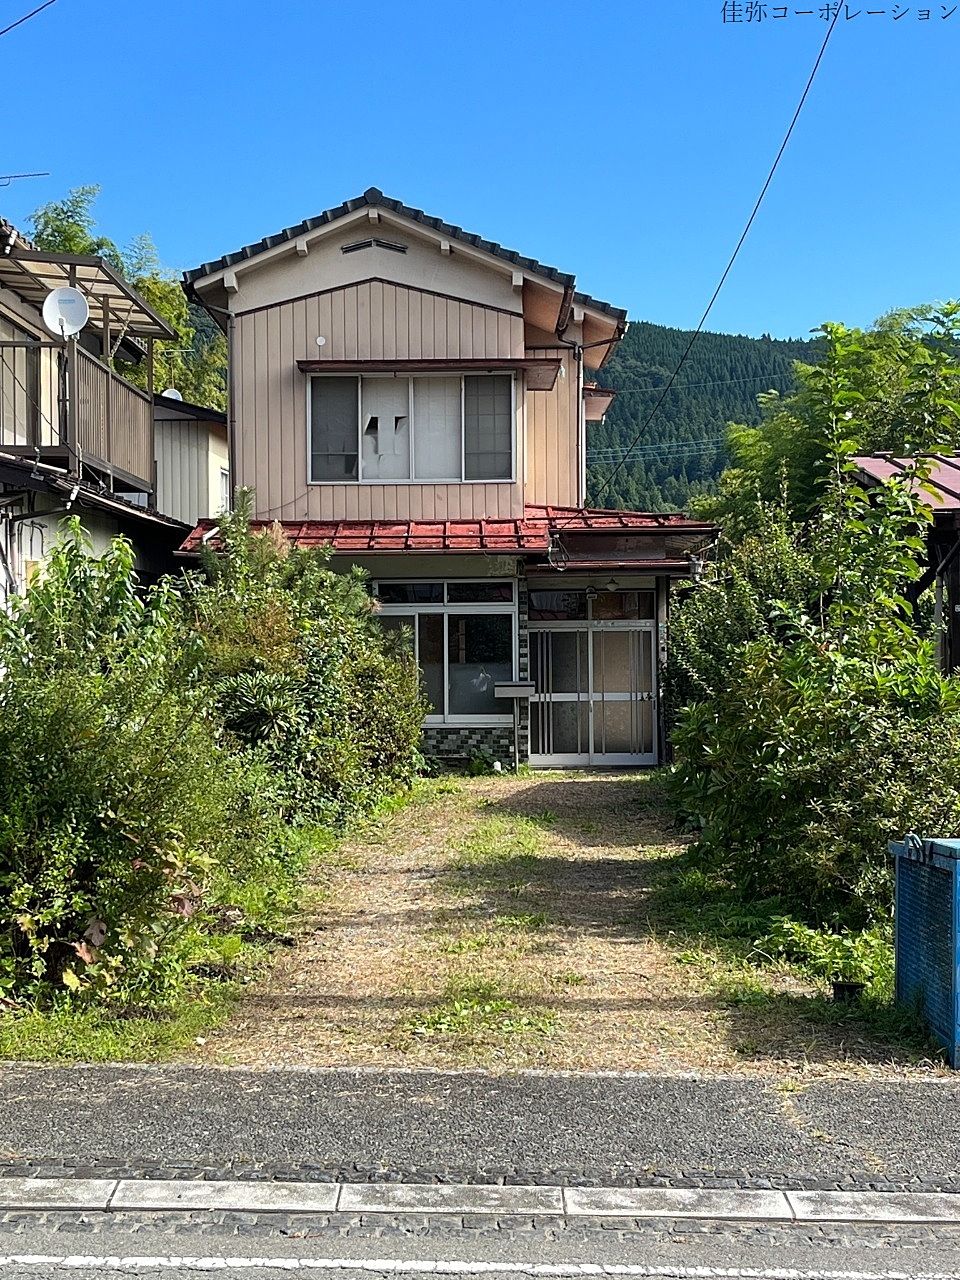 「安中市松井田町坂本」中古住宅のお引渡しが完了しました